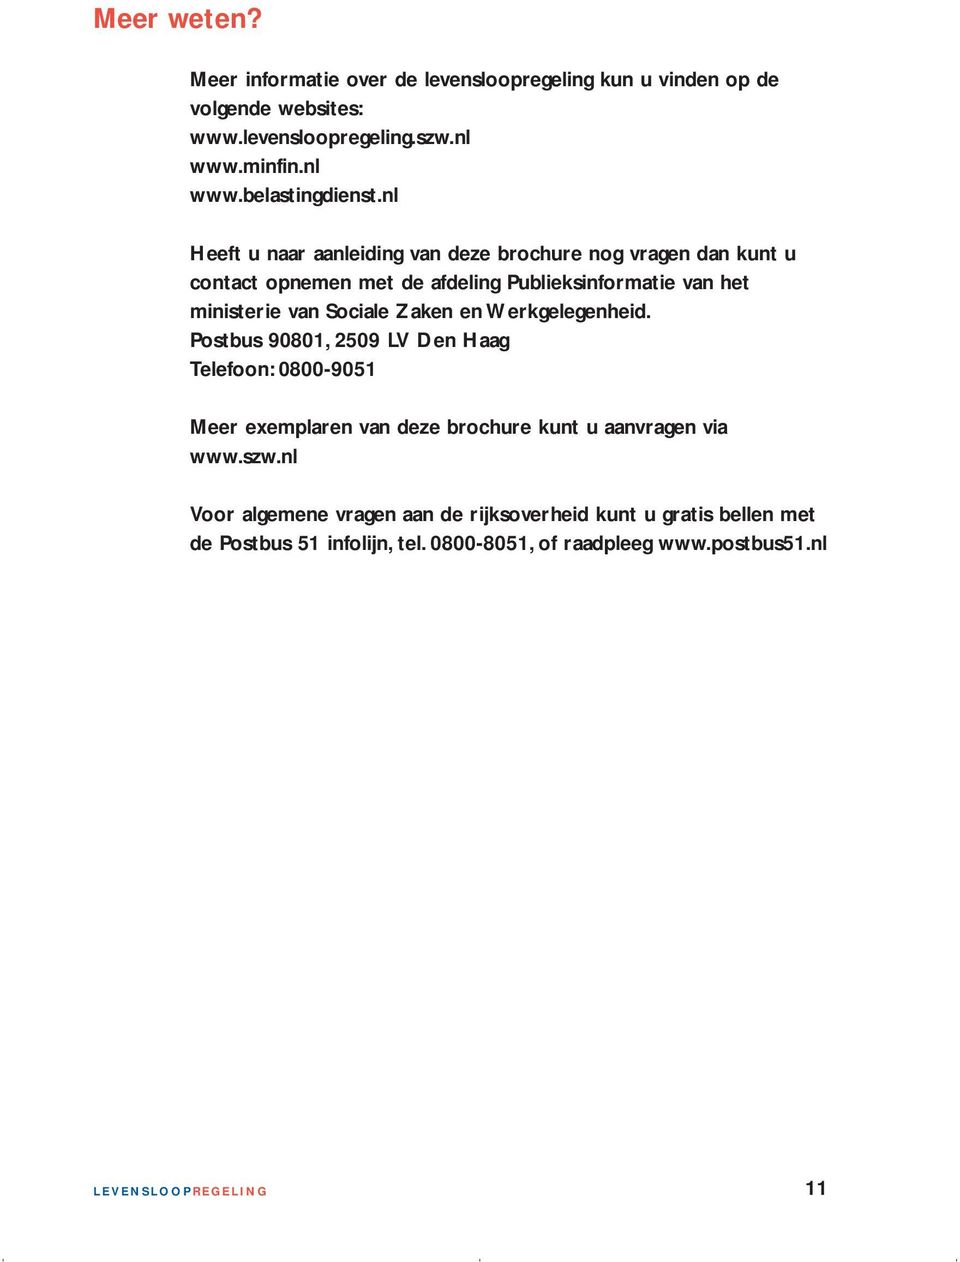 Zaken en Werkgelegenheid. Postbus 90801, 2509 LV Den Haag Telefoon: 0800-9051 Meer exemplaren van deze brochure kunt u aanvragen via www.szw.